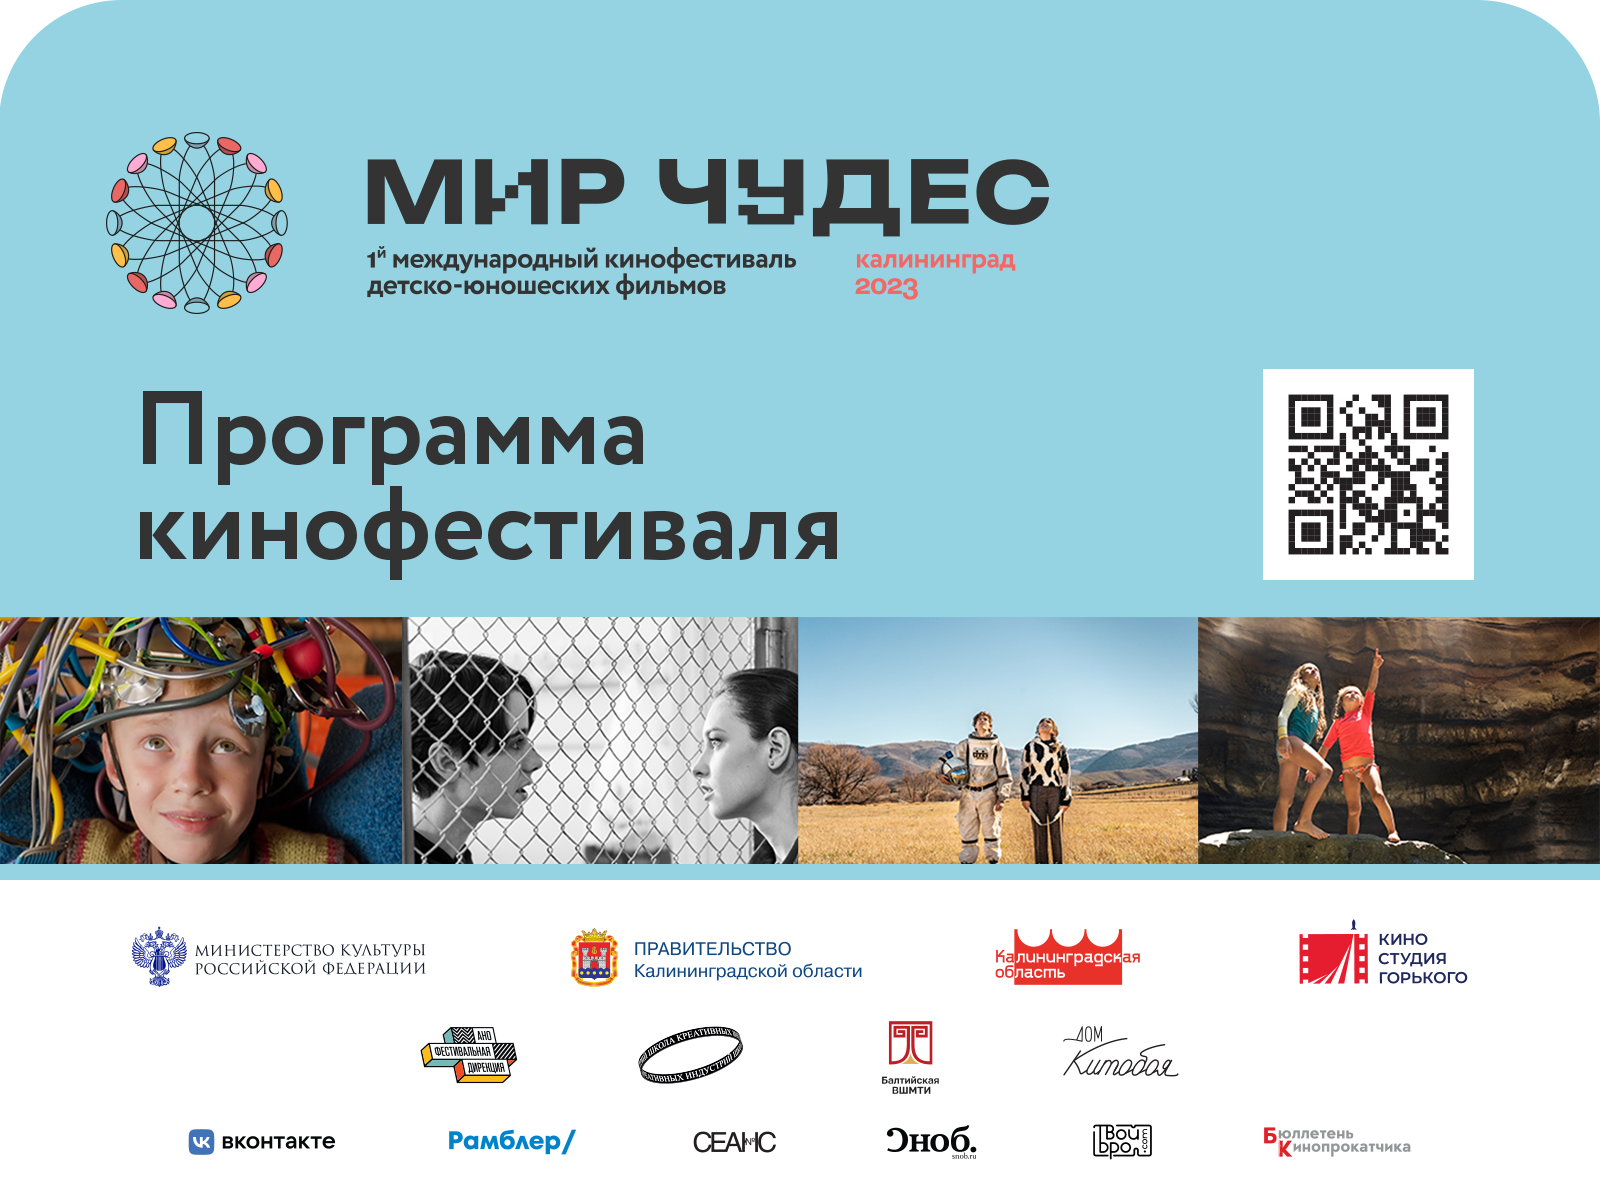 Первый кинофестиваль для подростков в Калининграде «Мир чудес» опубликовал кинопрограмму